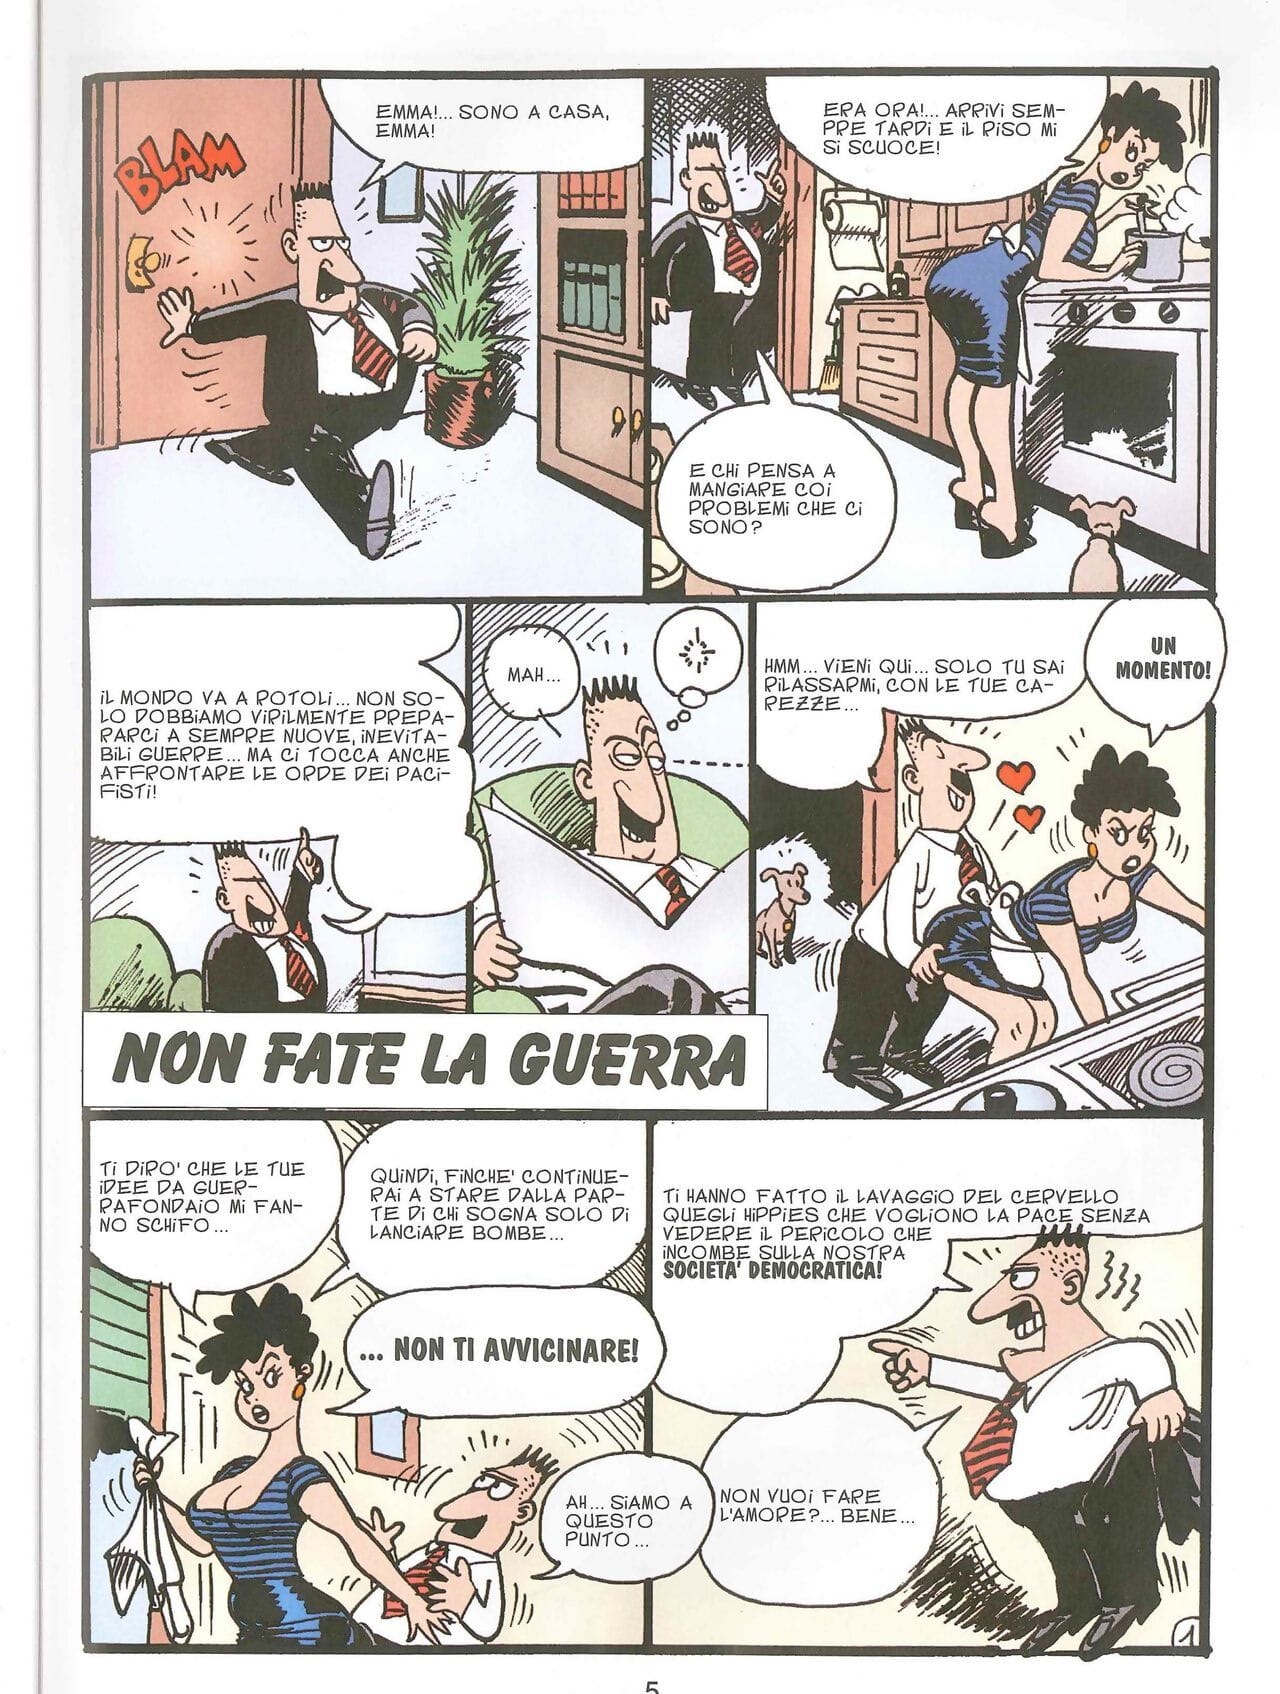 Chiara di Notte #9 page 1